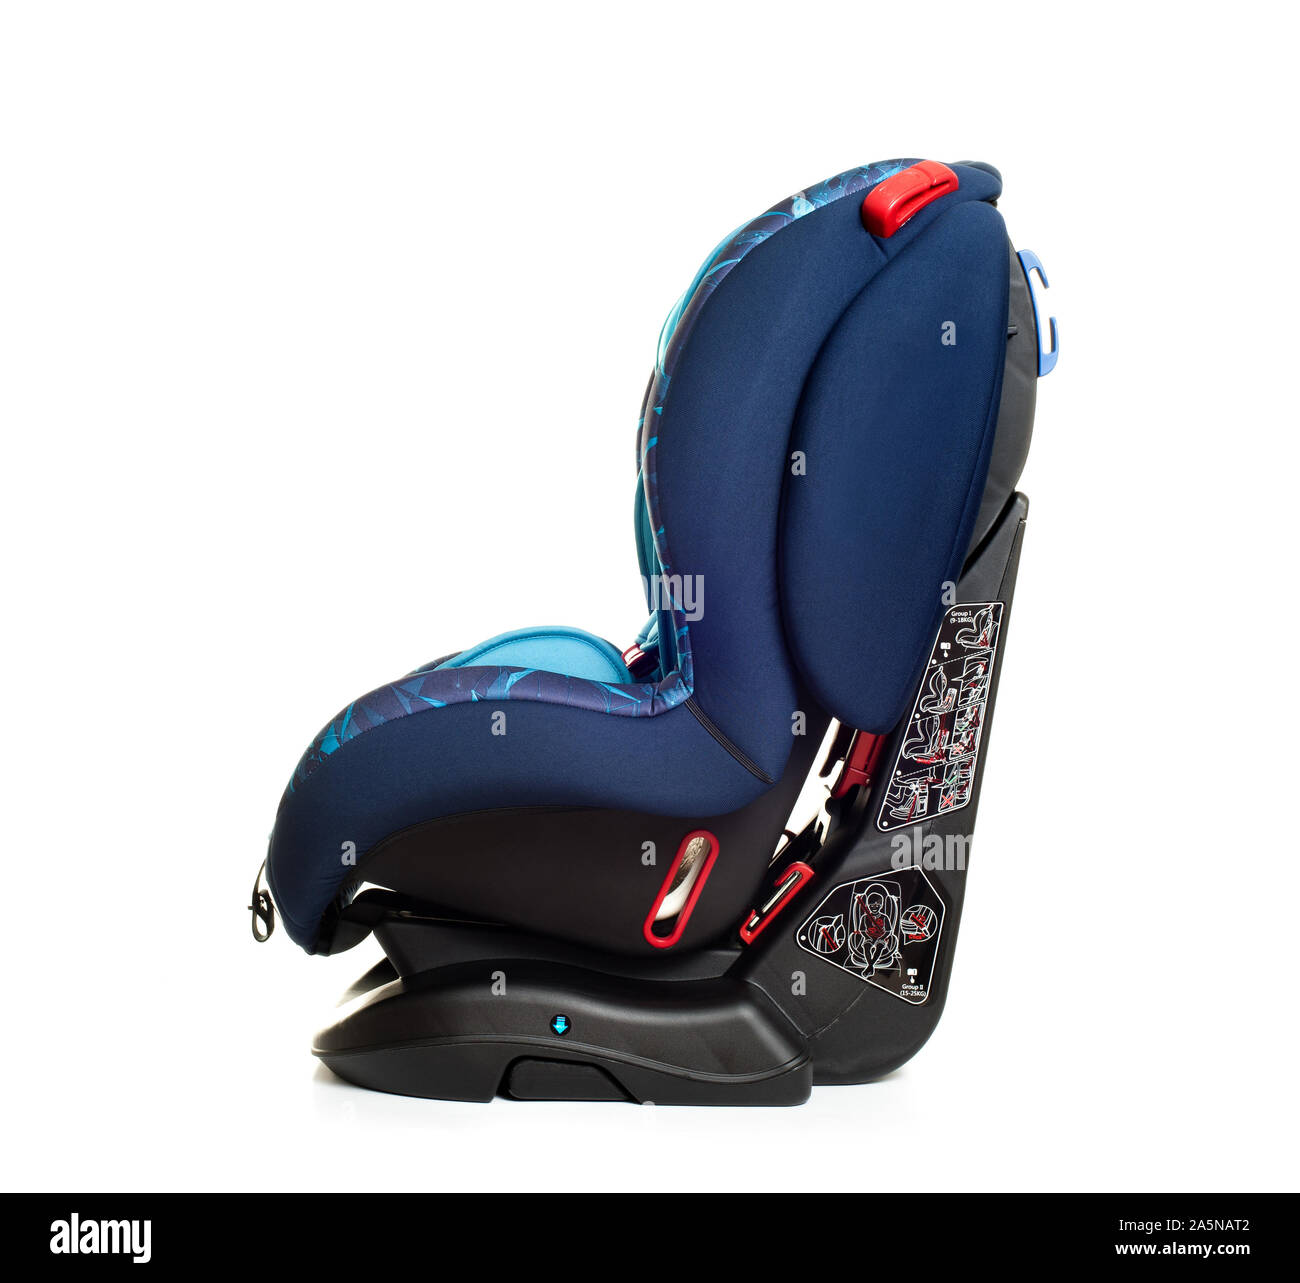 Blau Kindersitz auf weißem Hintergrund, Sitz, die speziell für Kinder von schweren oder tödlichen Verletzungen bei Kollisionen zu schützen. Stockfoto